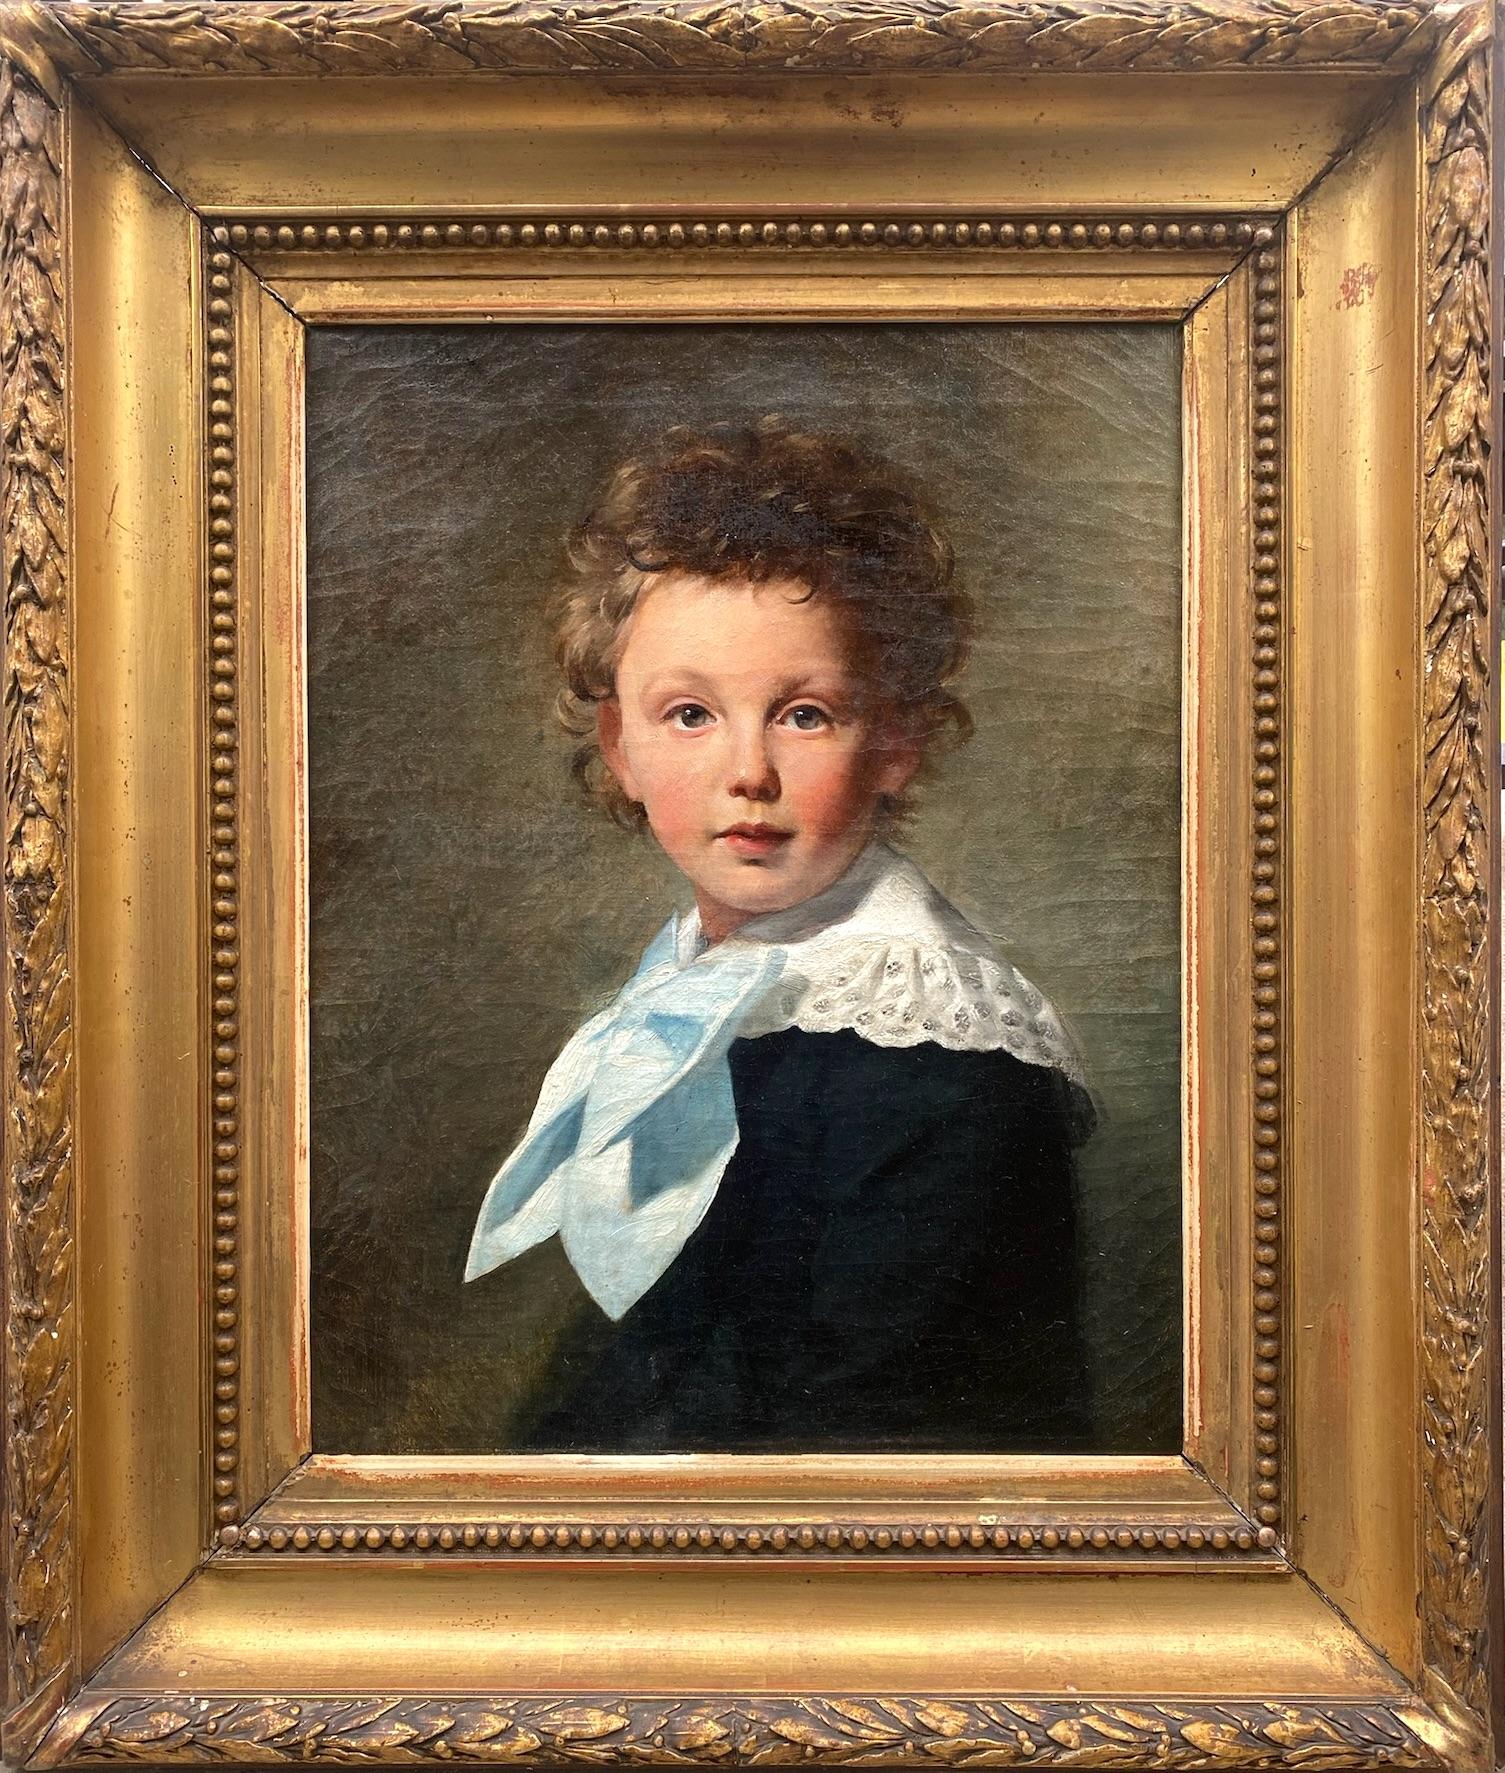 Félix Pescador y Saldana Portrait Painting - The blue bow: a little boy with tousled hair naturalistic portrait oil painting